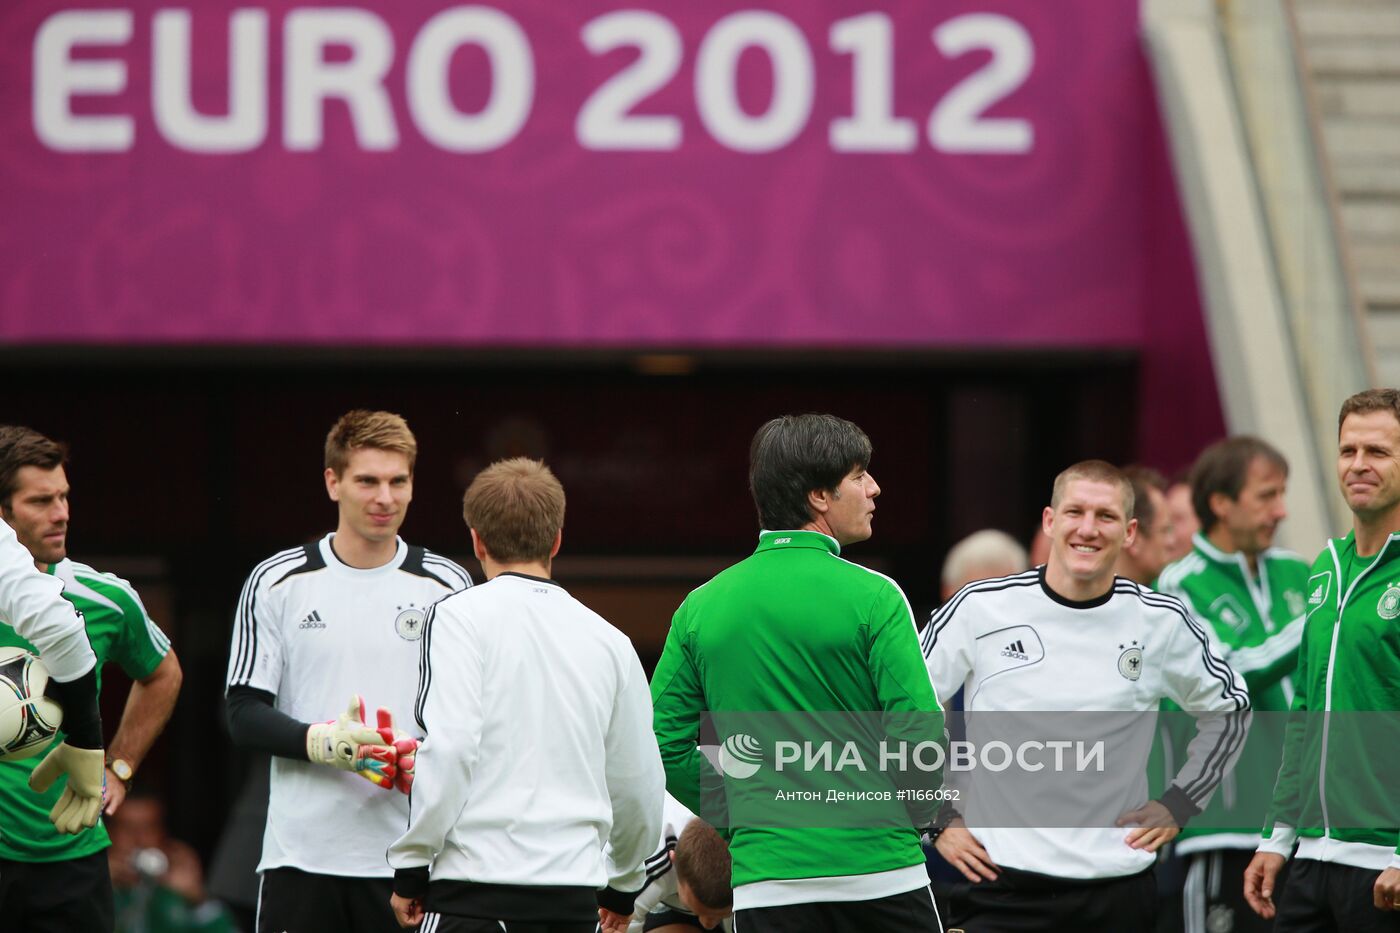 Футбол. ЕВРО - 2012. Тренировки сборных Германии и Италии